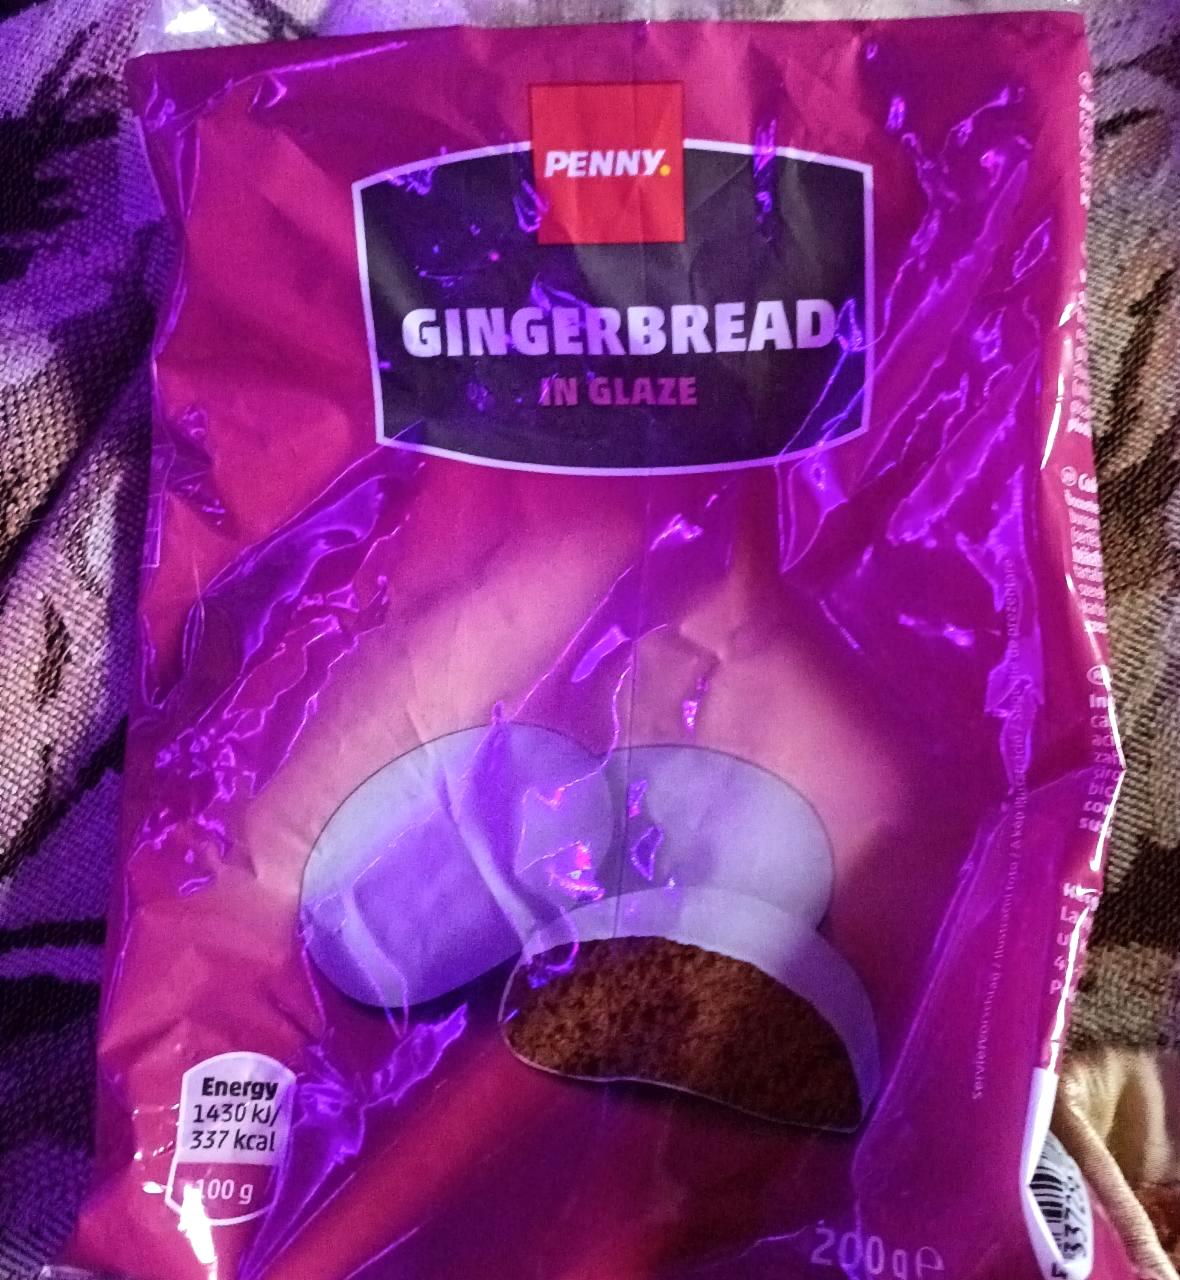 Képek - Gingerbread in glaze Penny